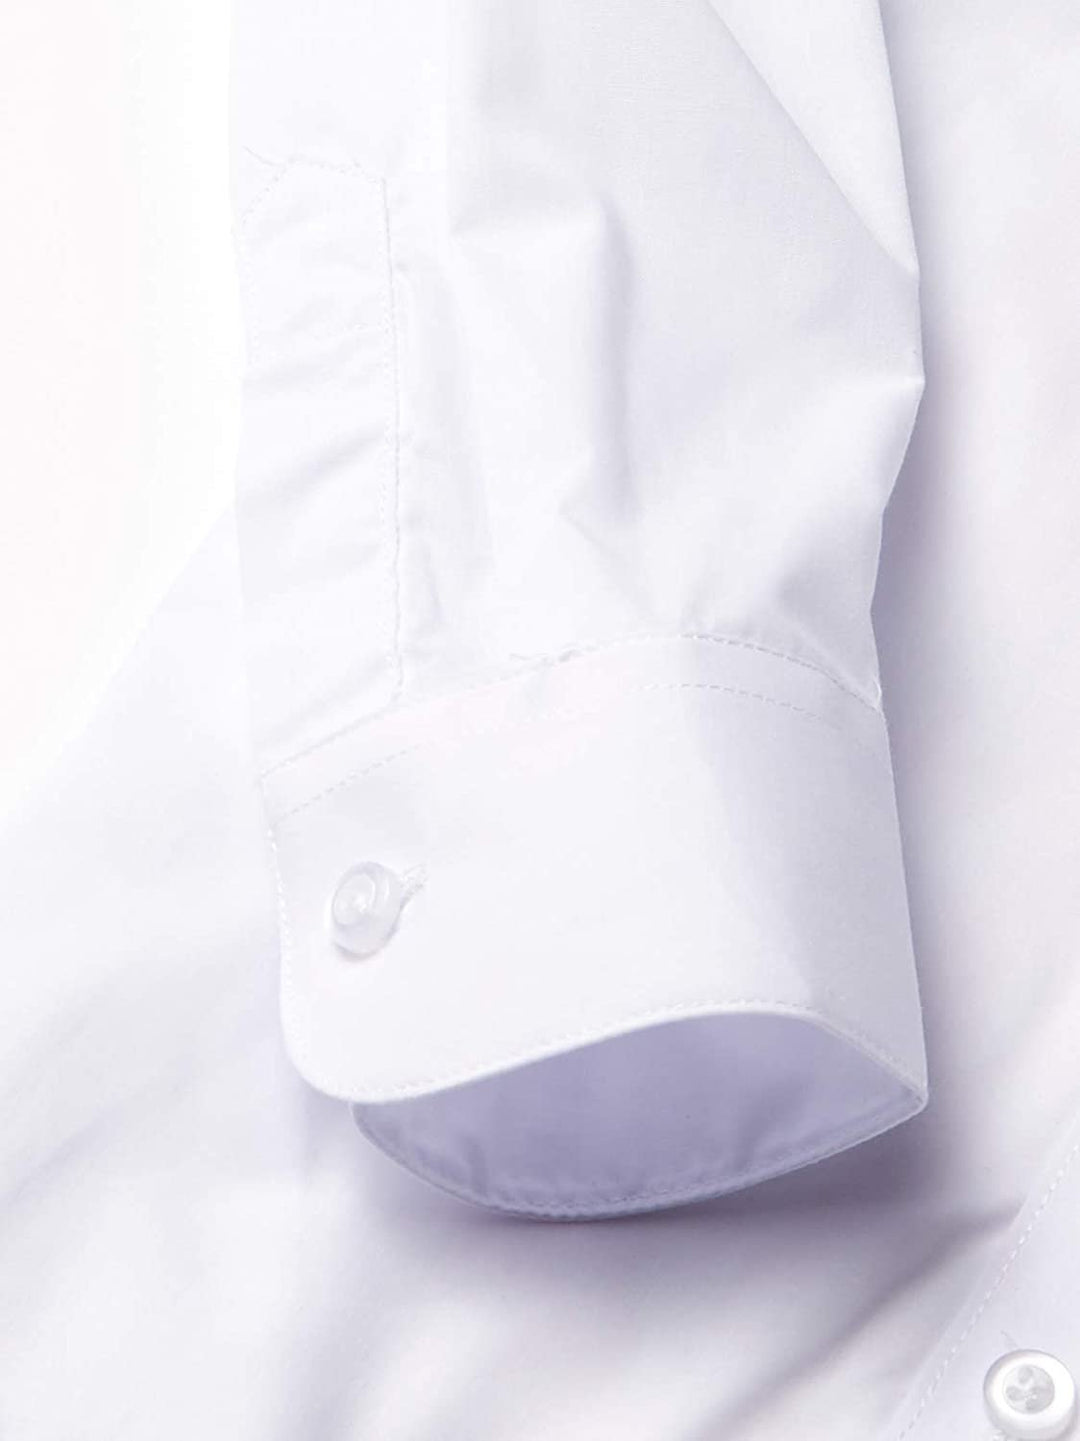 Isaac Mizrahi Boys' 4-Piece Velvet Vest Set